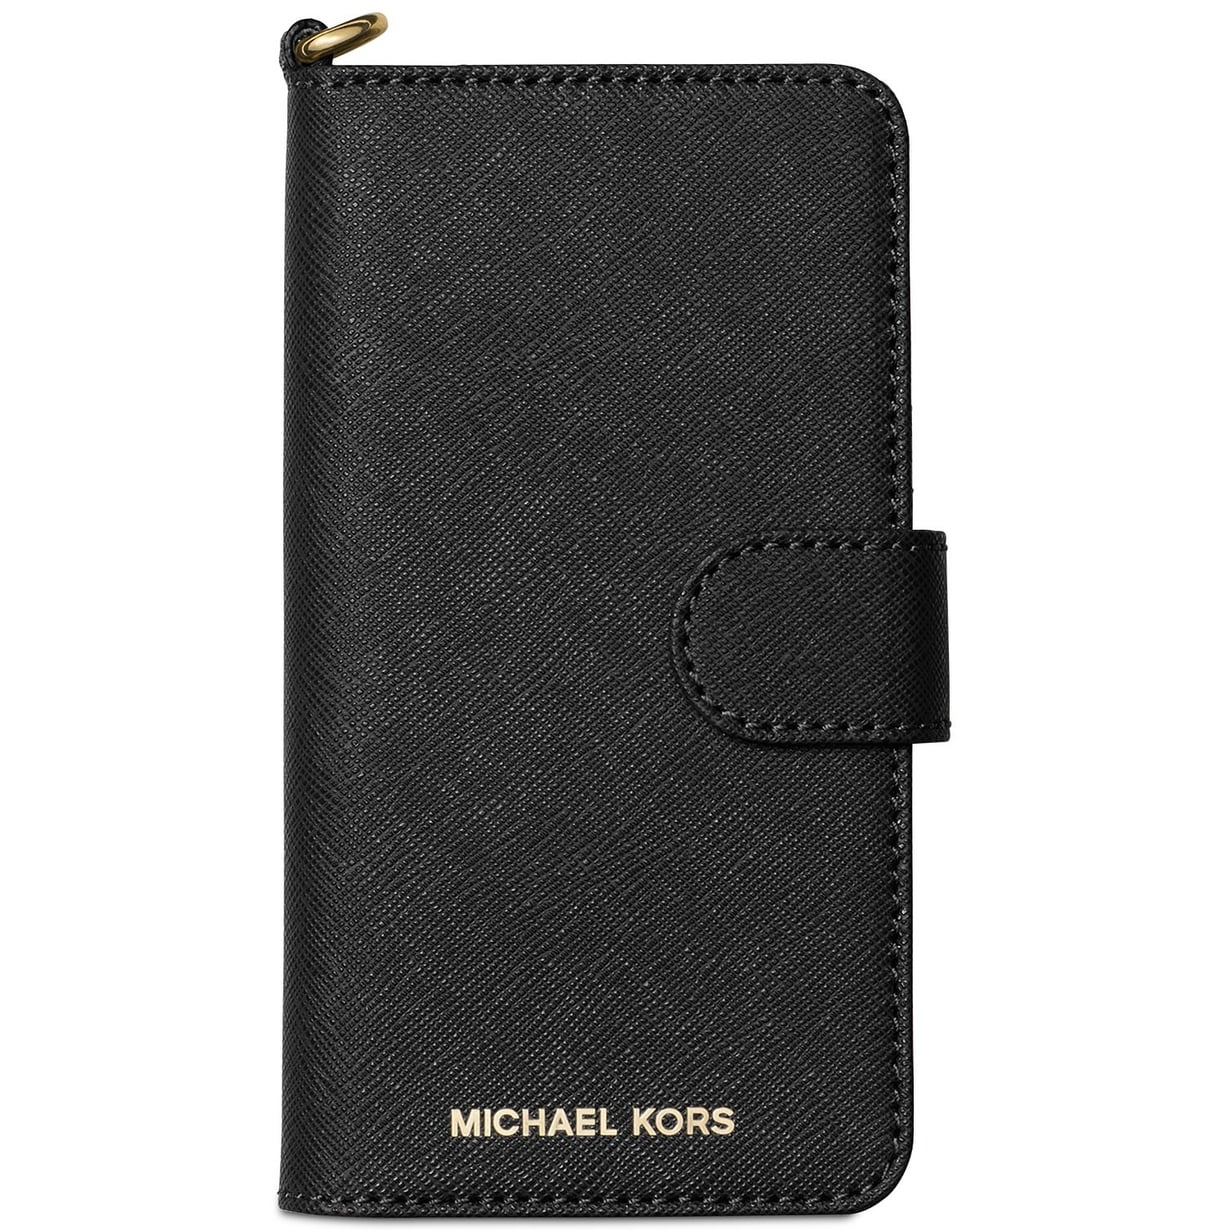 michael kors iphone 8 wallet case Shop 